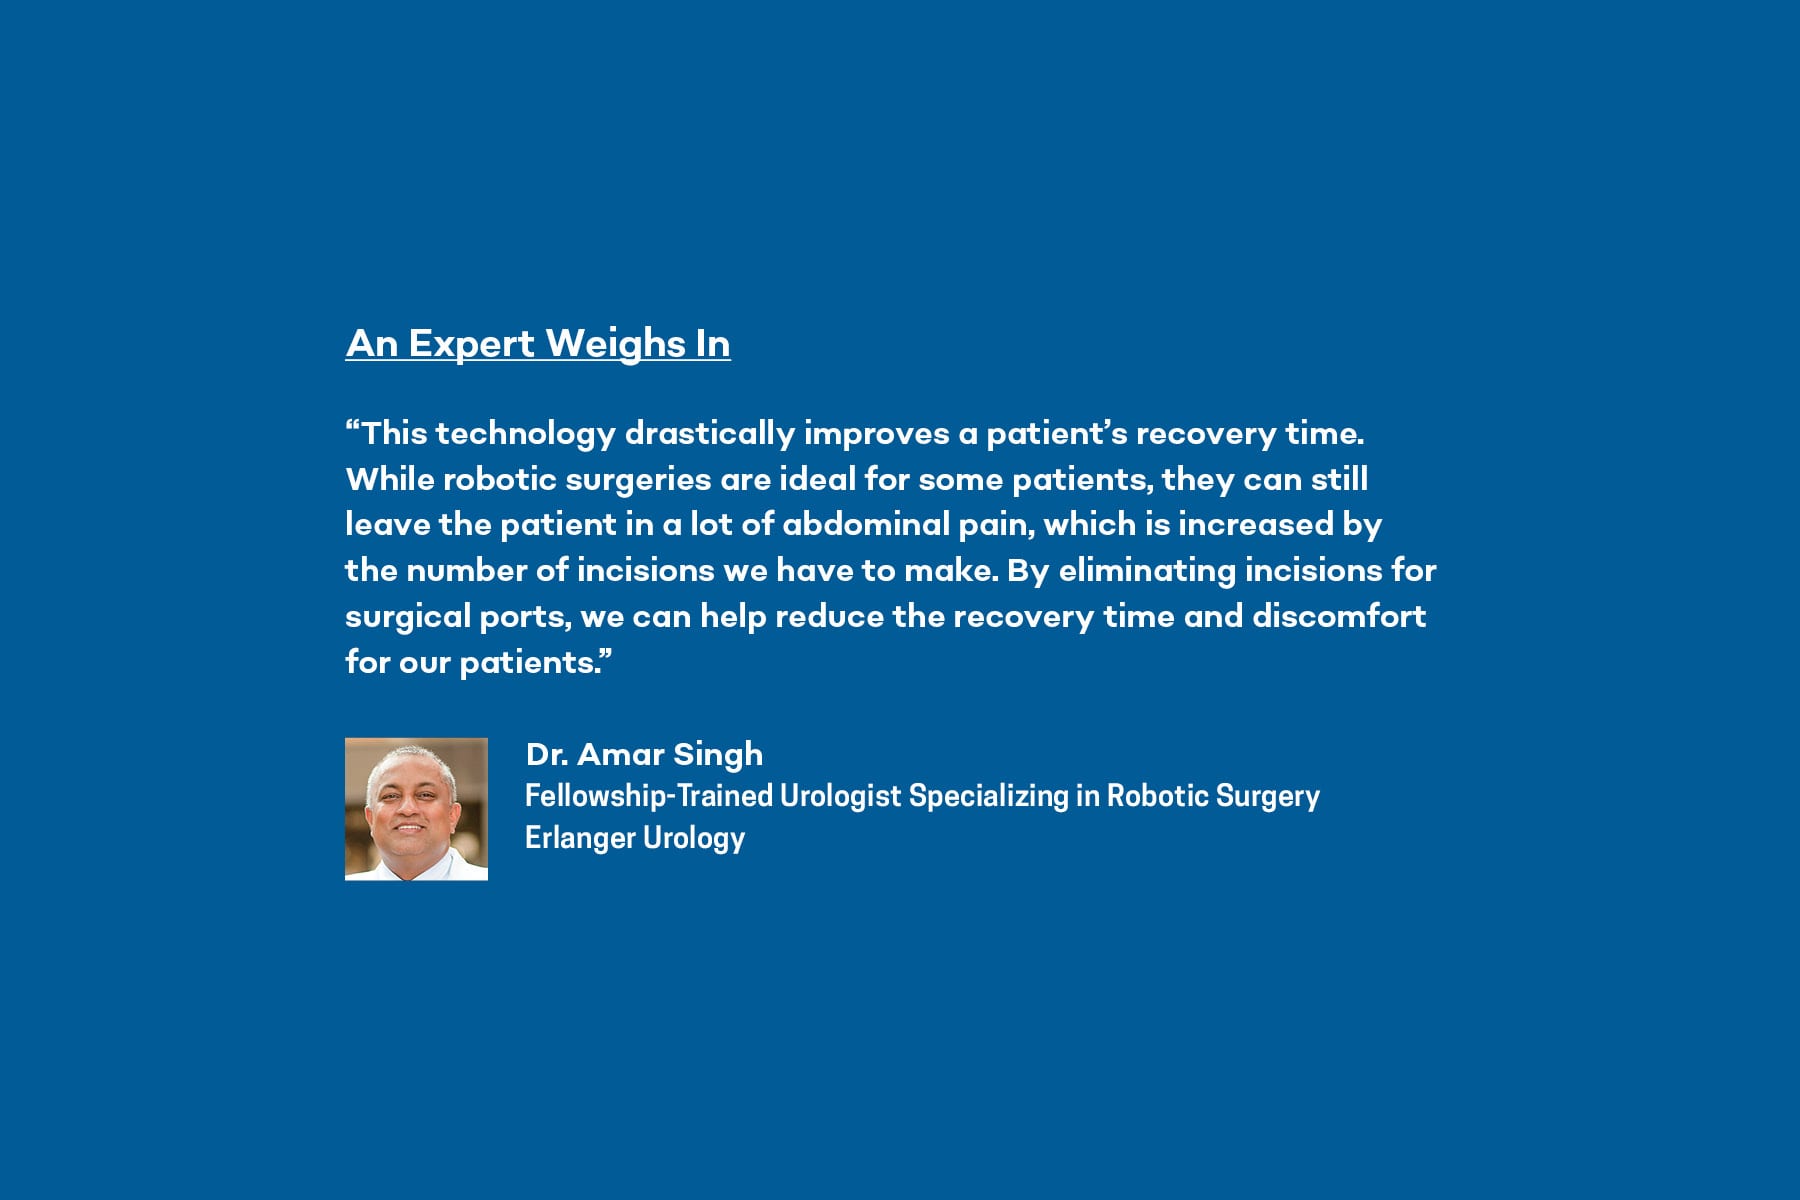 Dr. Amar Singh of Erlanger Urology shares his expert opinion on the da Vinci SP Robot